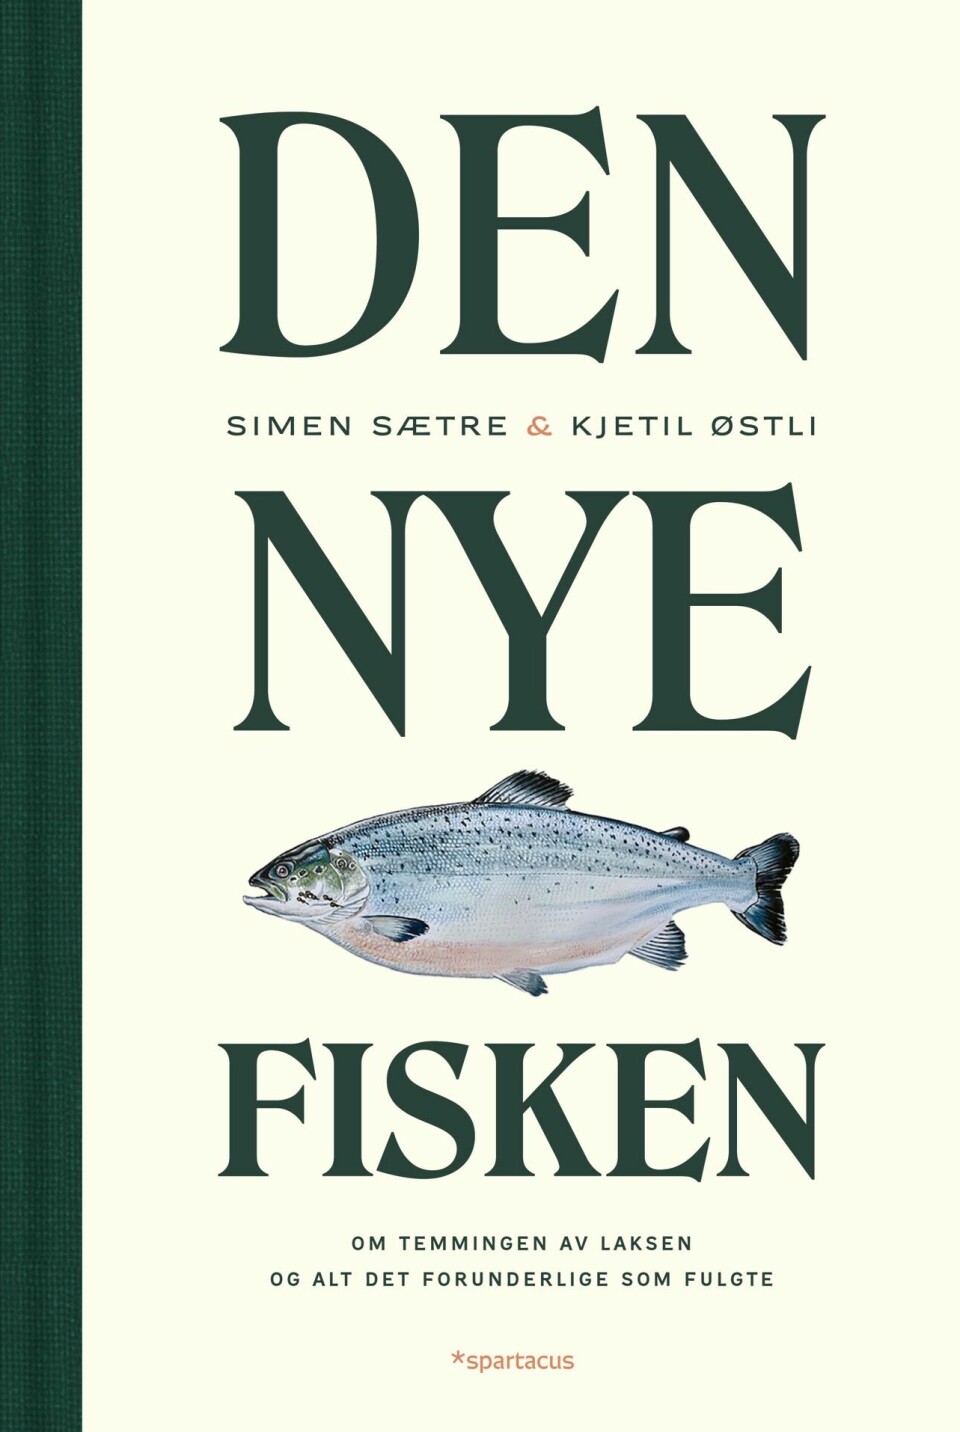 Simen Sætre er, sammen med Kjetil Østli, forfatter av boka Den nye fisken som ble gitt ut i 2021.